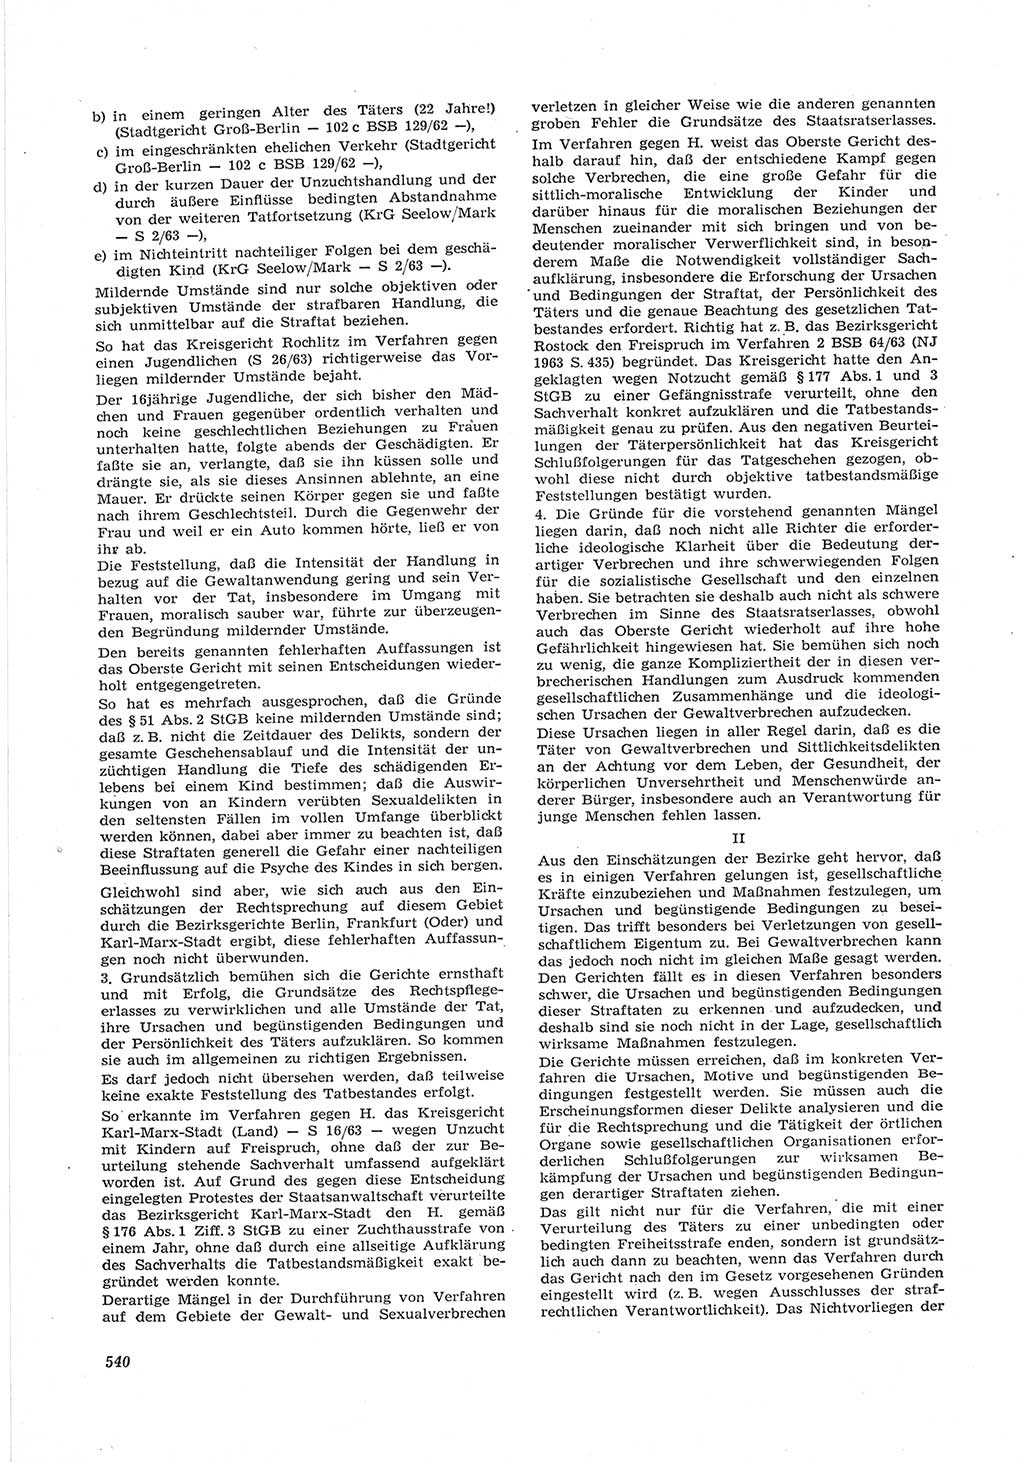 Neue Justiz (NJ), Zeitschrift für Recht und Rechtswissenschaft [Deutsche Demokratische Republik (DDR)], 17. Jahrgang 1963, Seite 540 (NJ DDR 1963, S. 540)